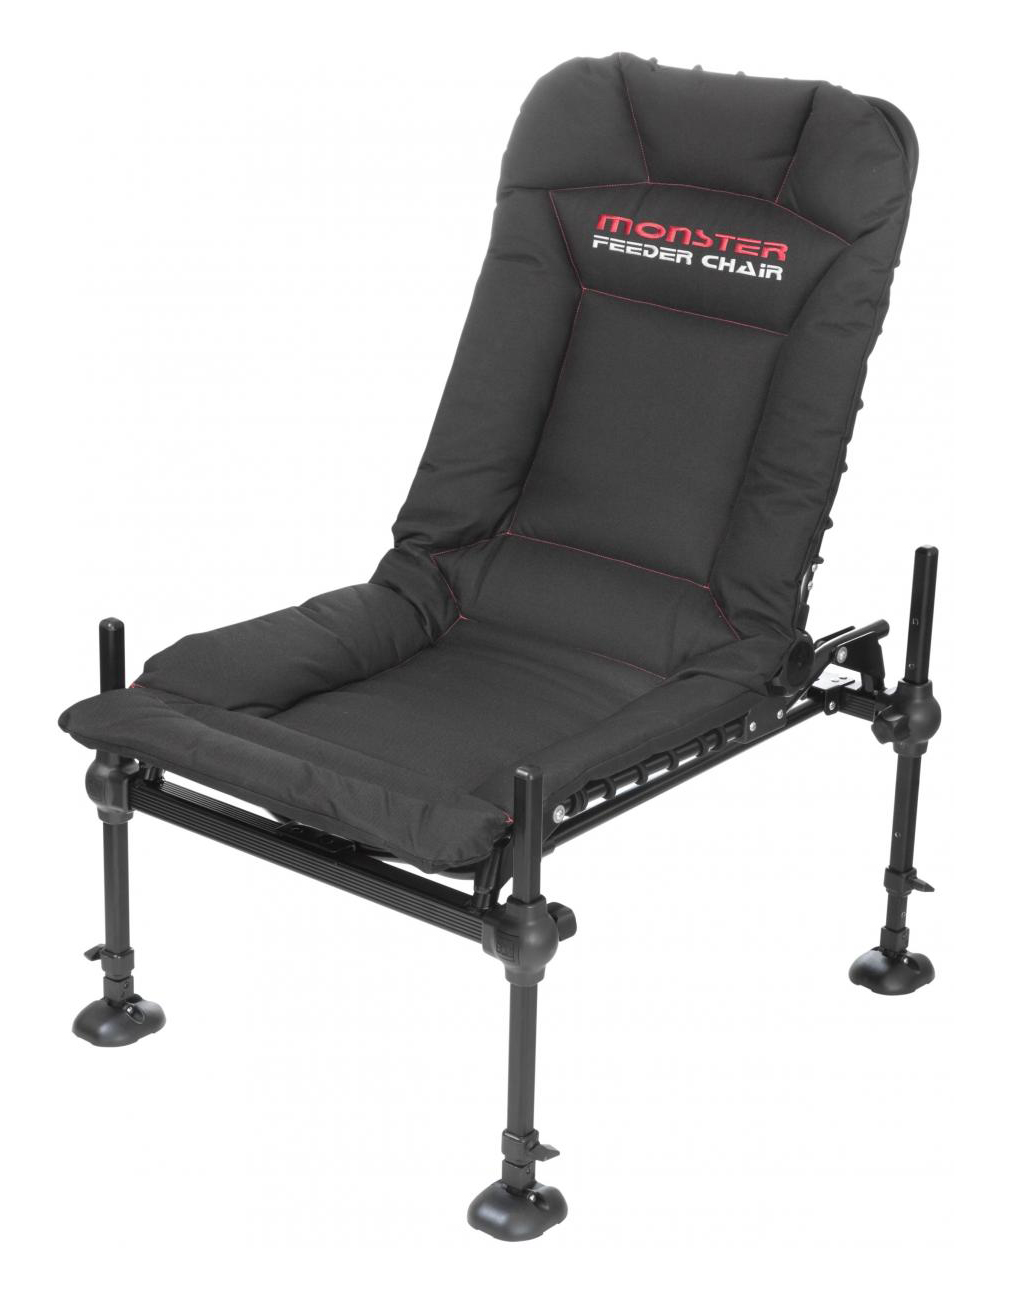 Кресло для фидерной ловли trabucco specialist feeder chair